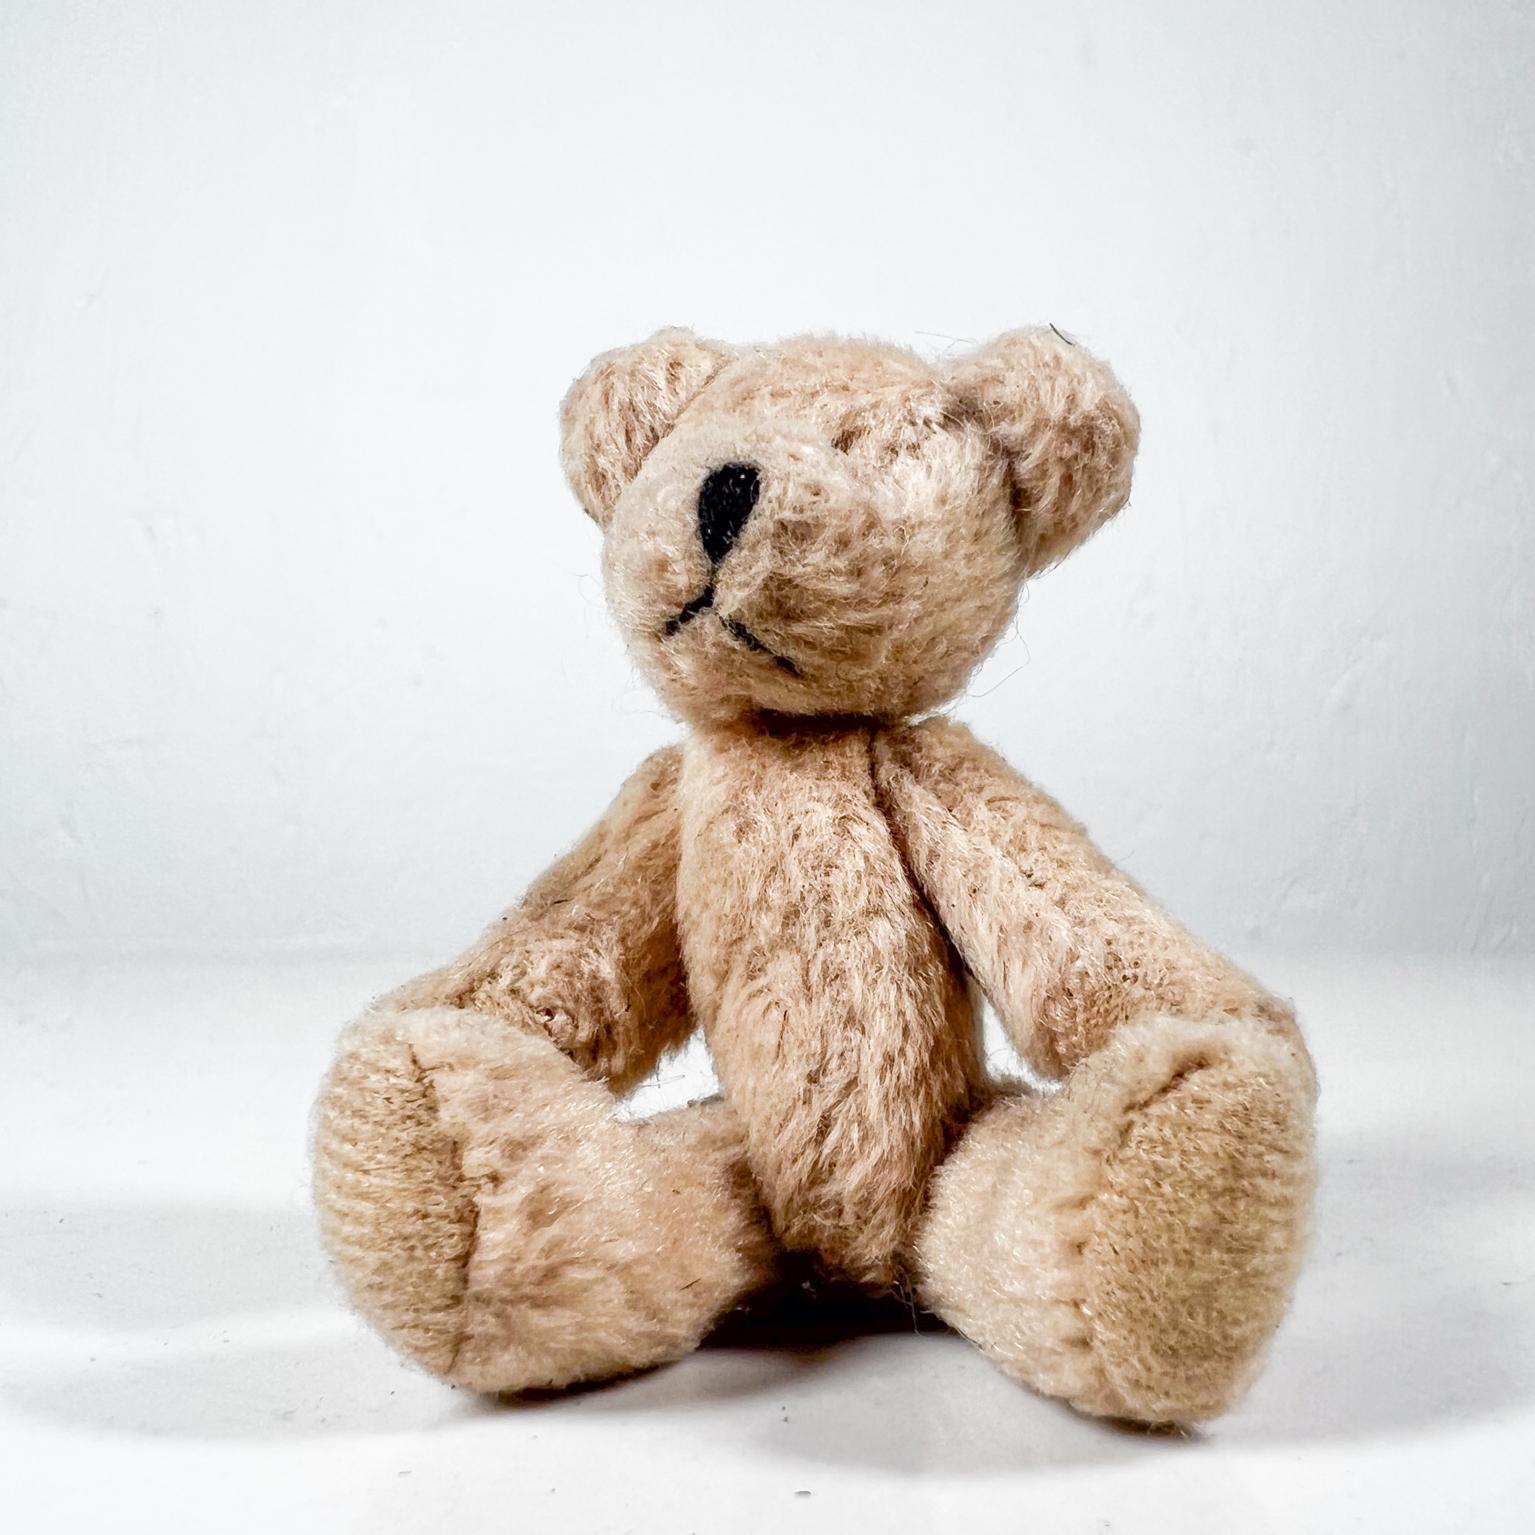 Fabric Mid 20th Century Tiny Baby Teddy Bear Soft Huggable Vintage For Sale